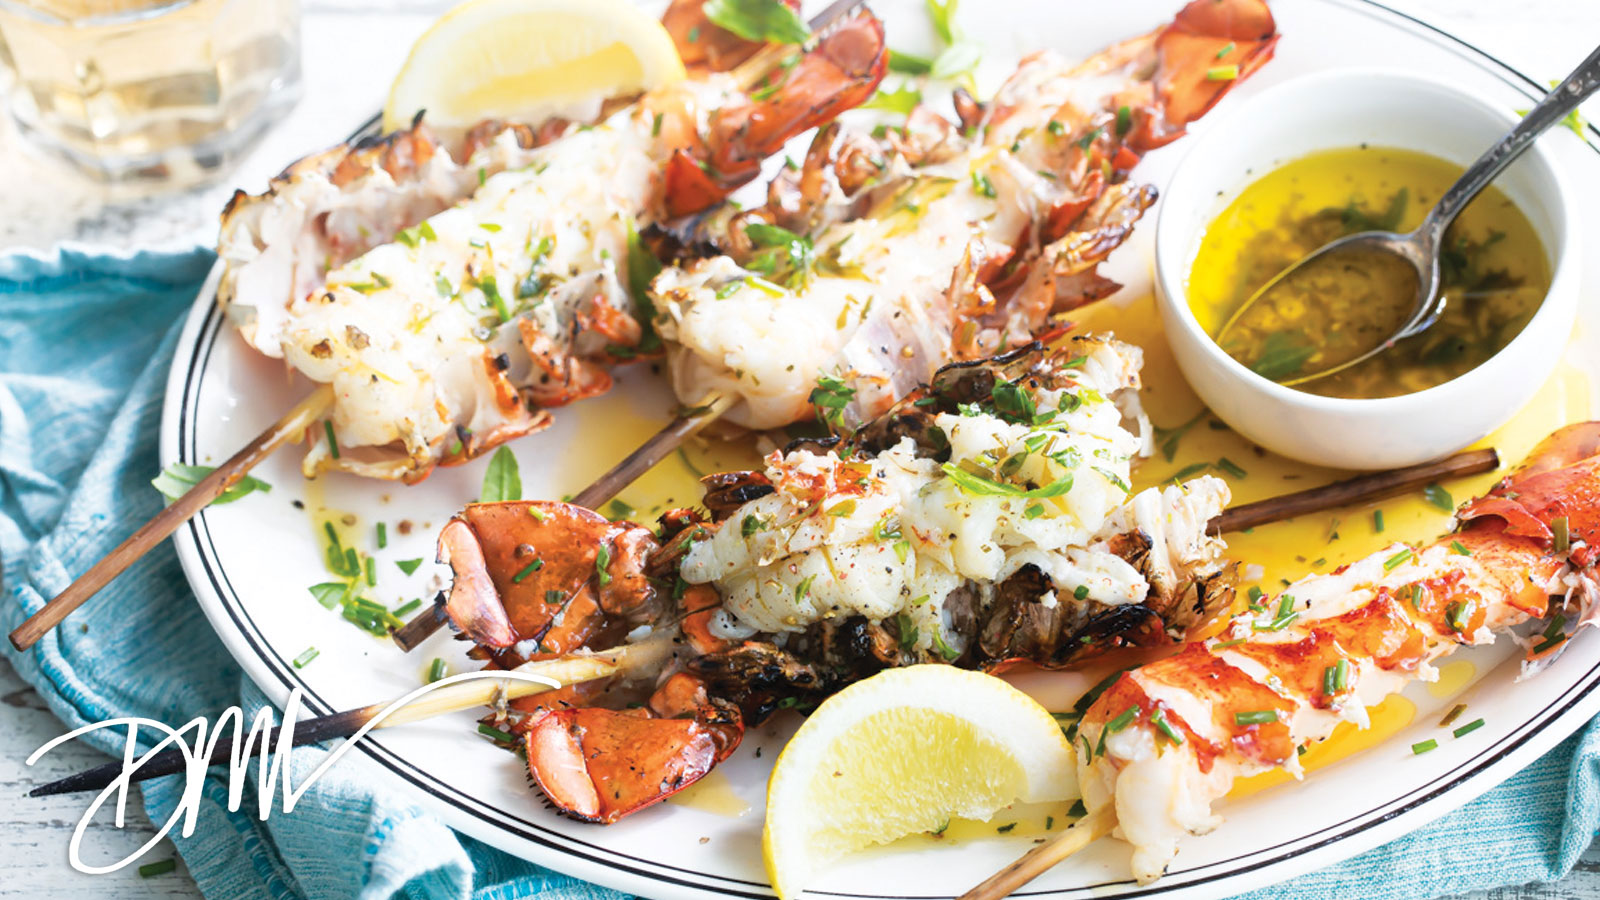 Chef Dena's Grilled Lobster Tails in Salsa Verde Butter – Get